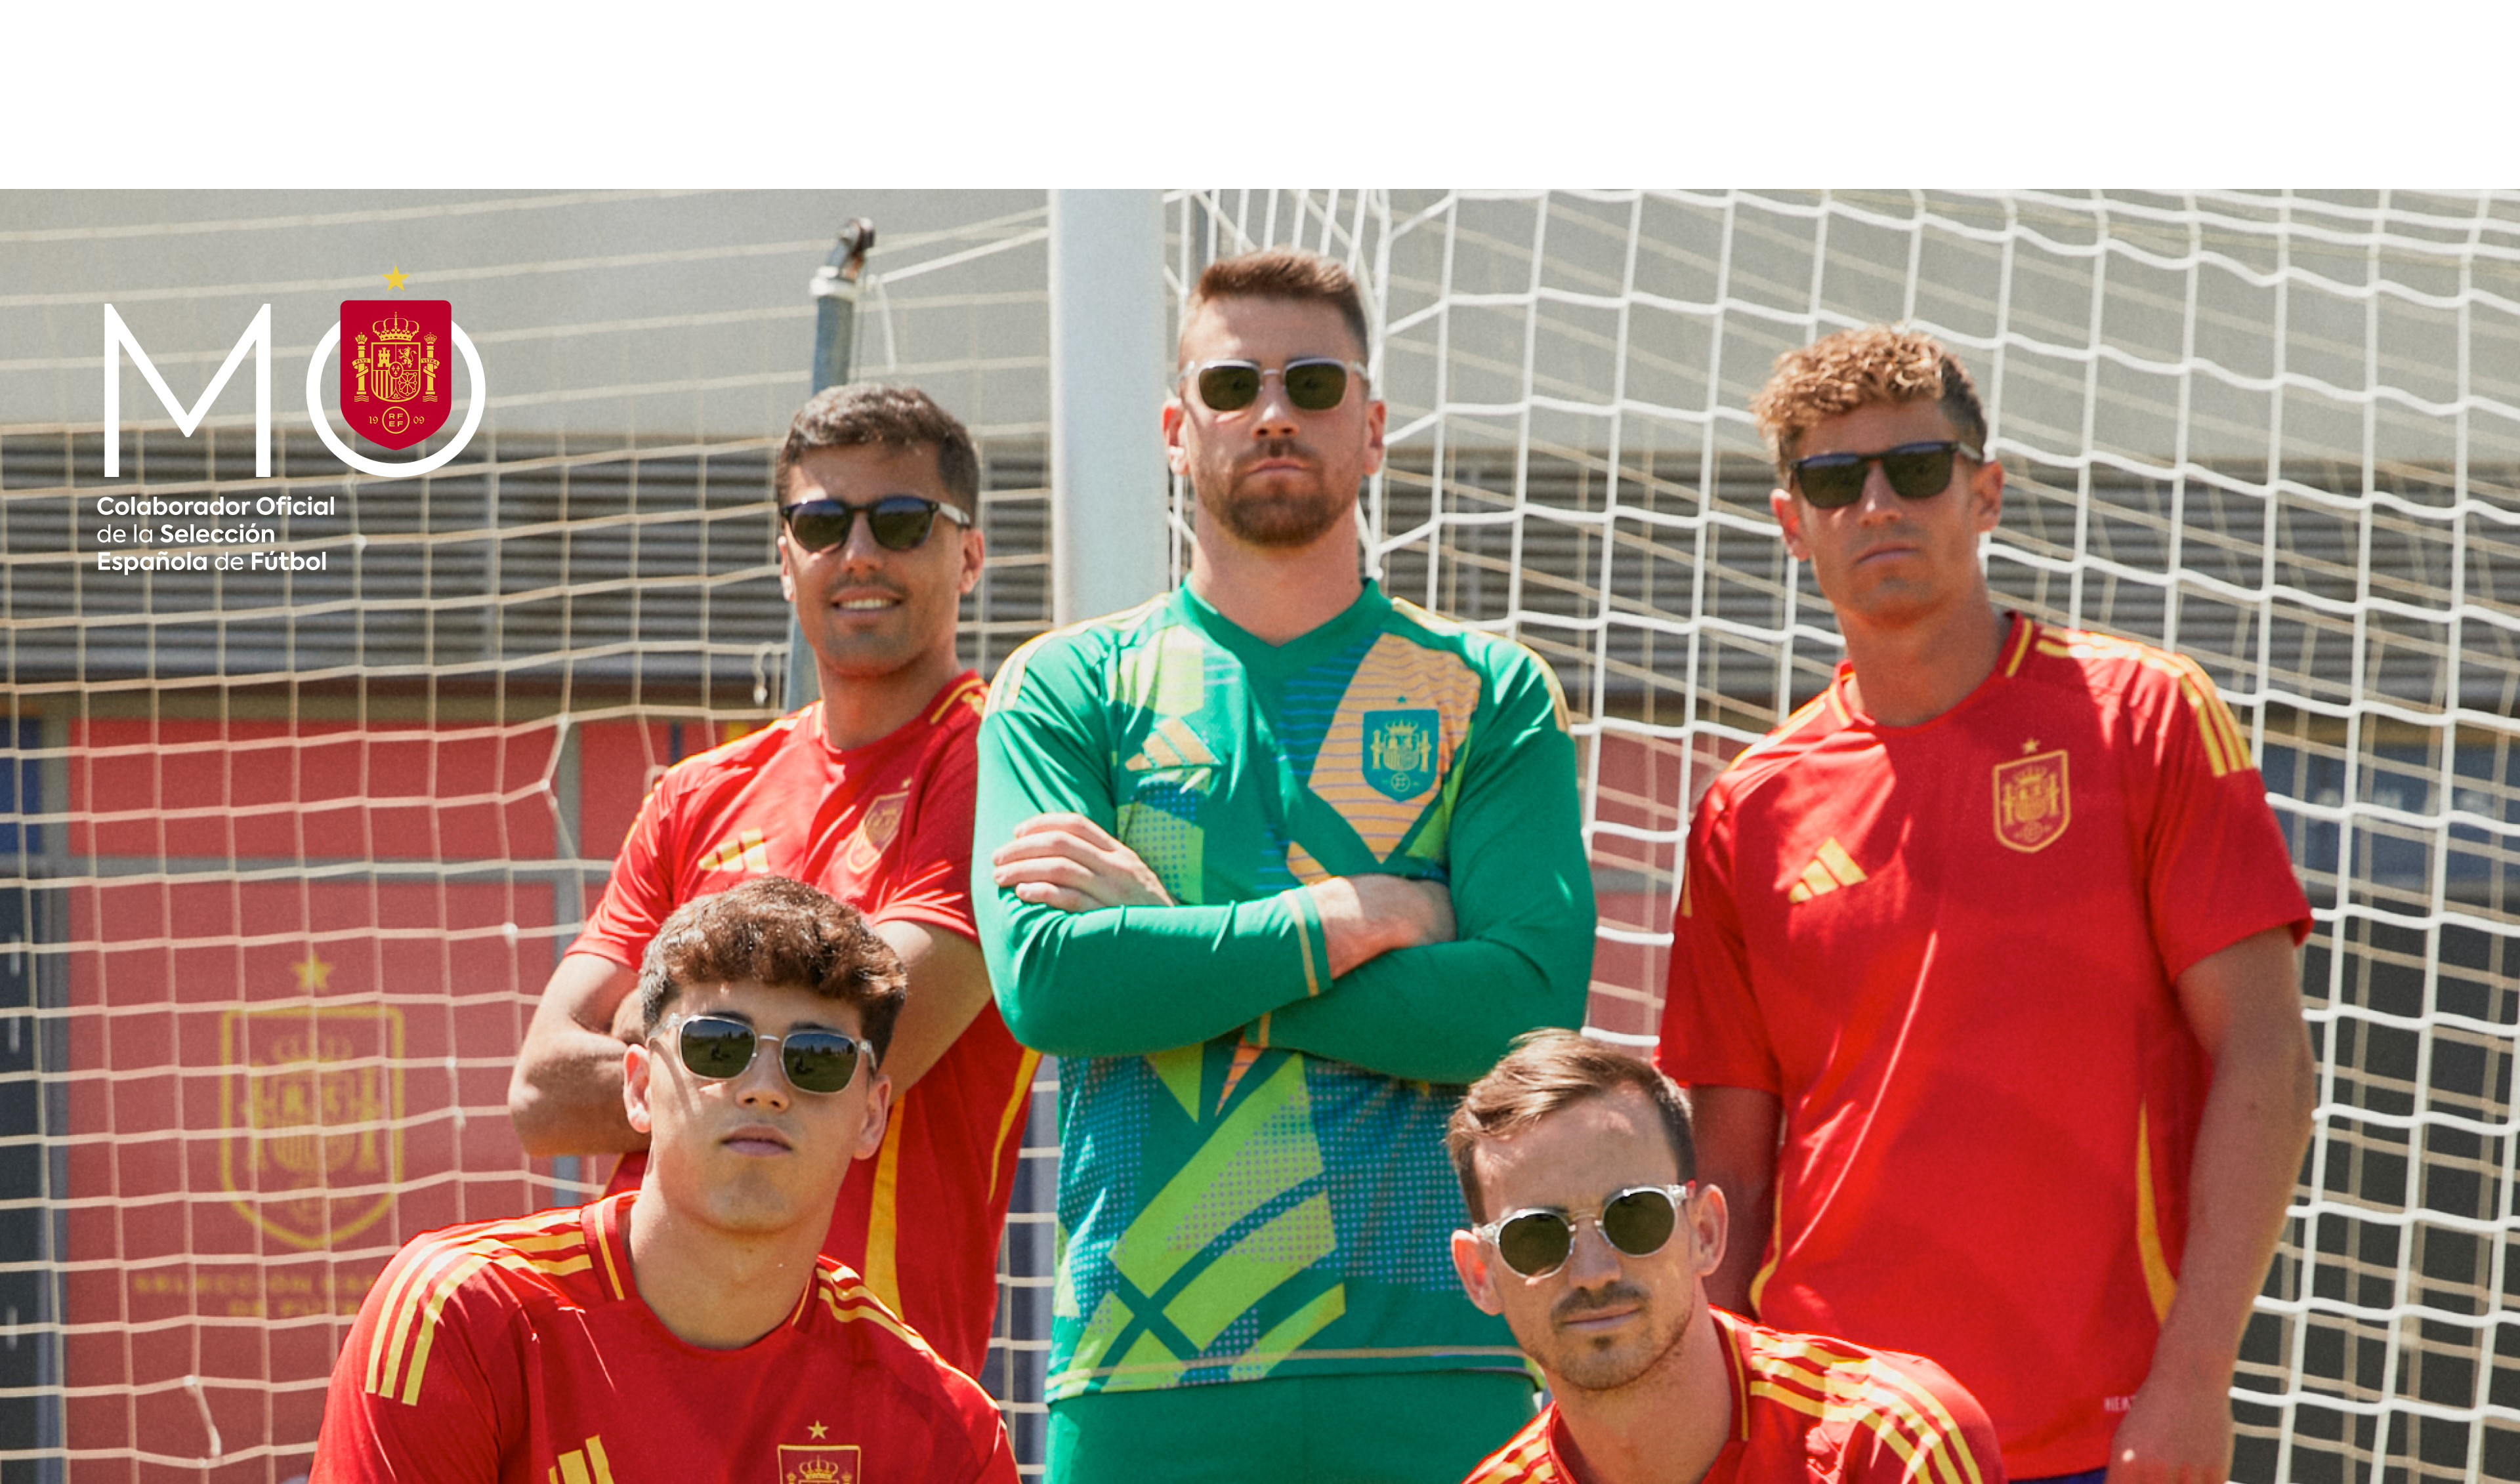 Mó x Selección - Jugadores de la seleccion española posando y usando gafas de Multiópticas